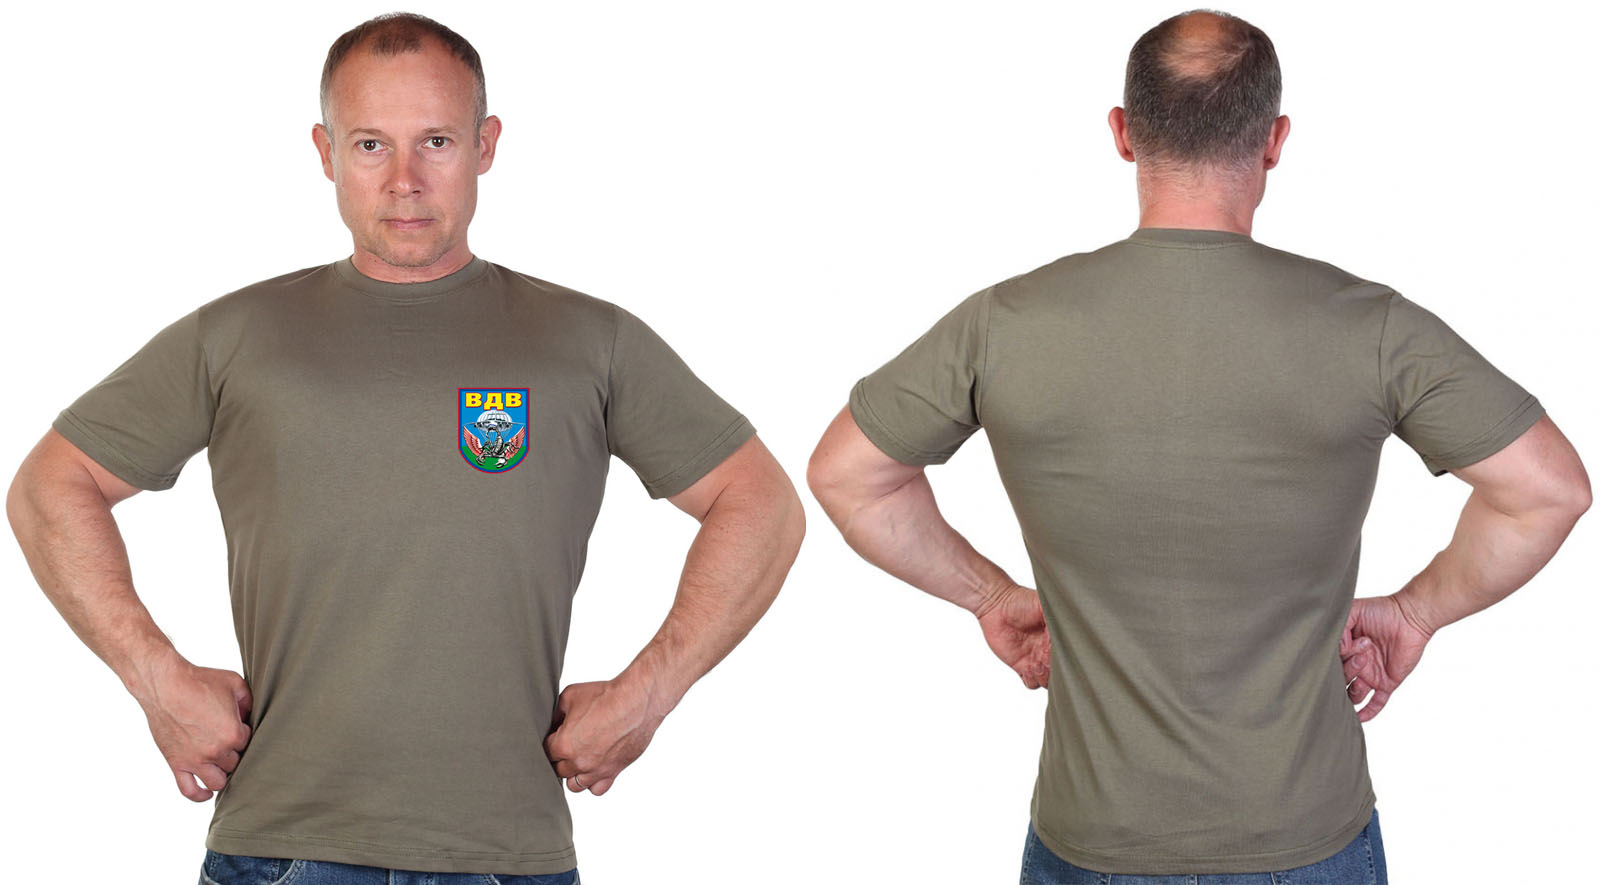 Оливковая футболка с термотрансфером скорпион "ВДВ" 